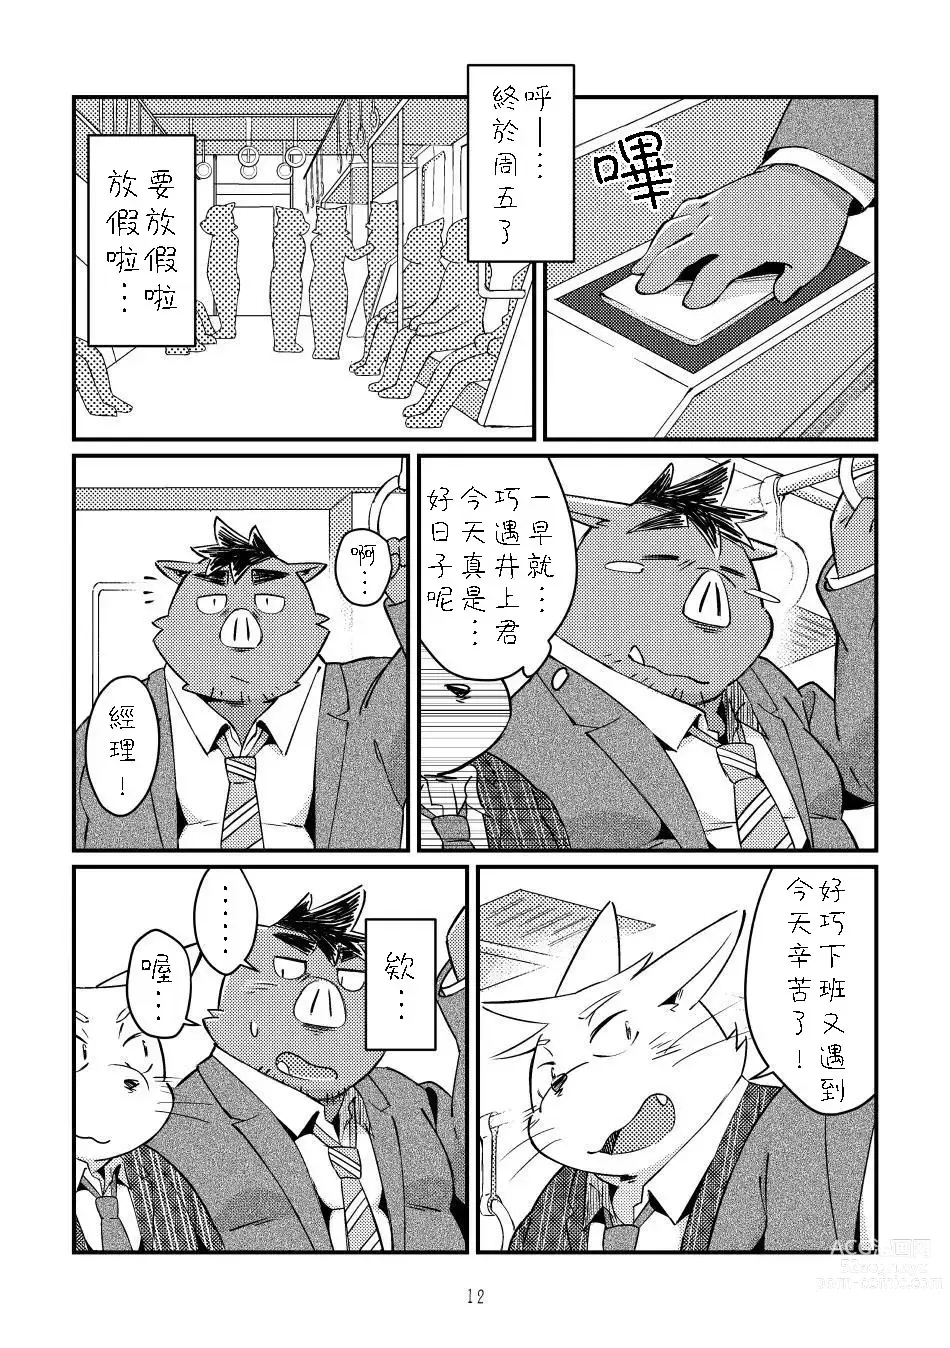 Page 11 of doujinshi Ikawa buchou to Inoue-kun to.